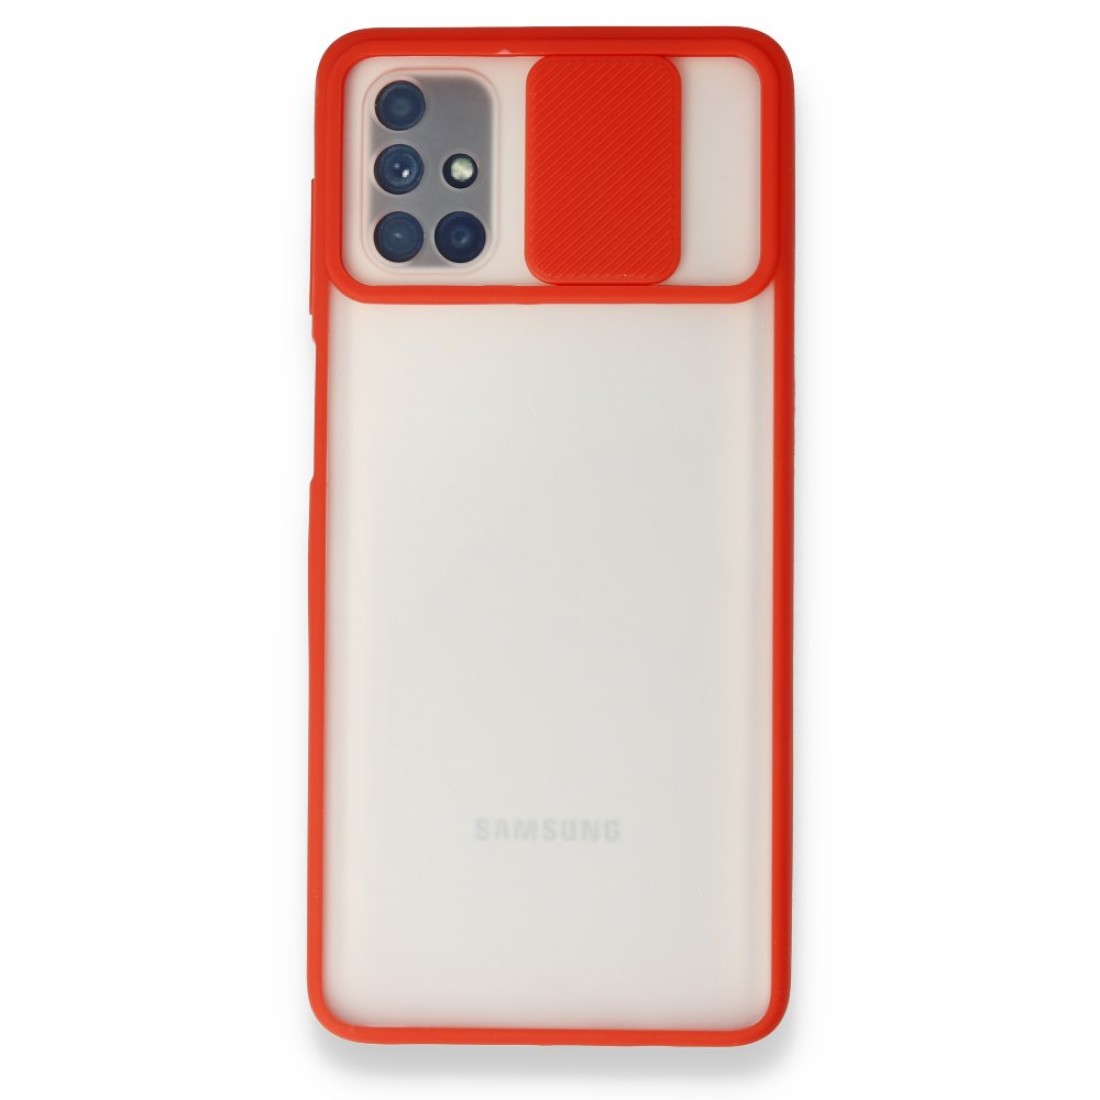 Samsung Galaxy M51 Kılıf Palm Buzlu Kamera Sürgülü Silikon - Kırmızı